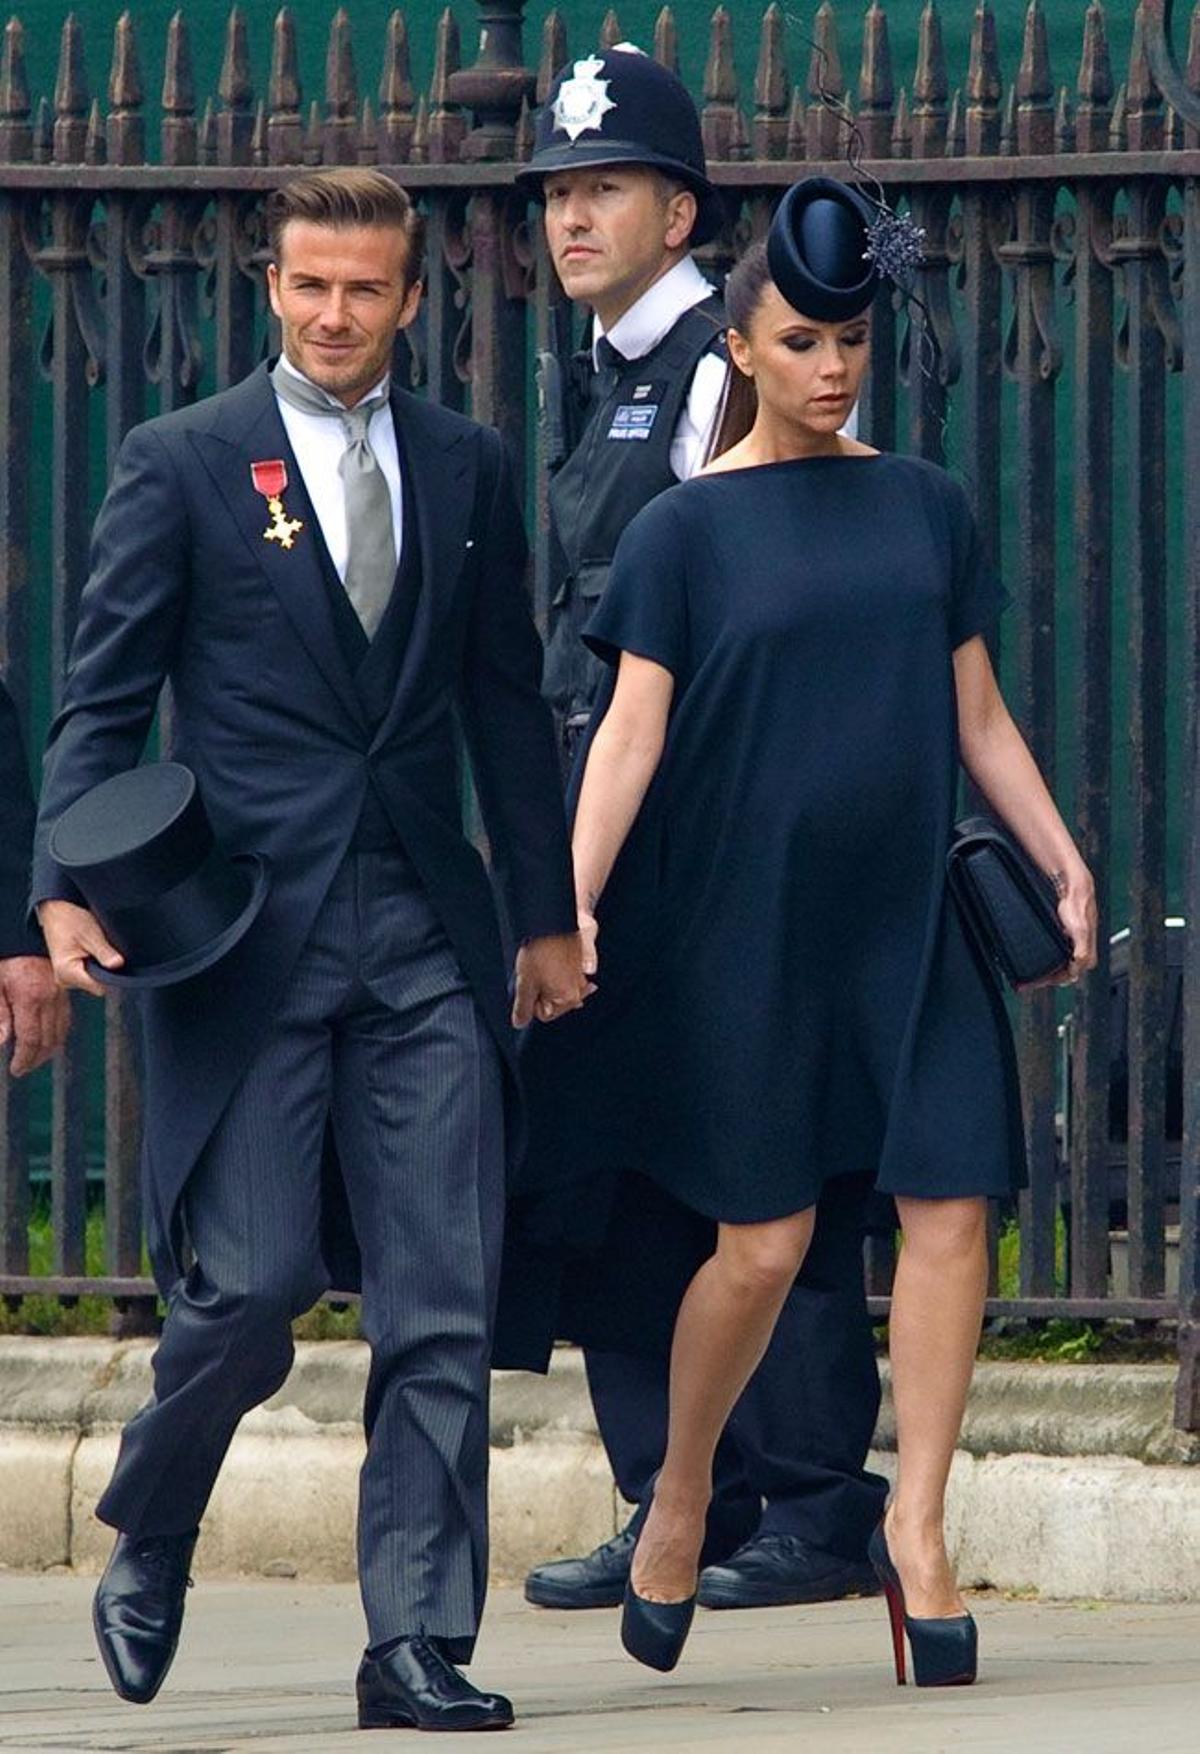 El matrimonio Beckham llega a la boda del príncipe Guillermo y Kate Middleton